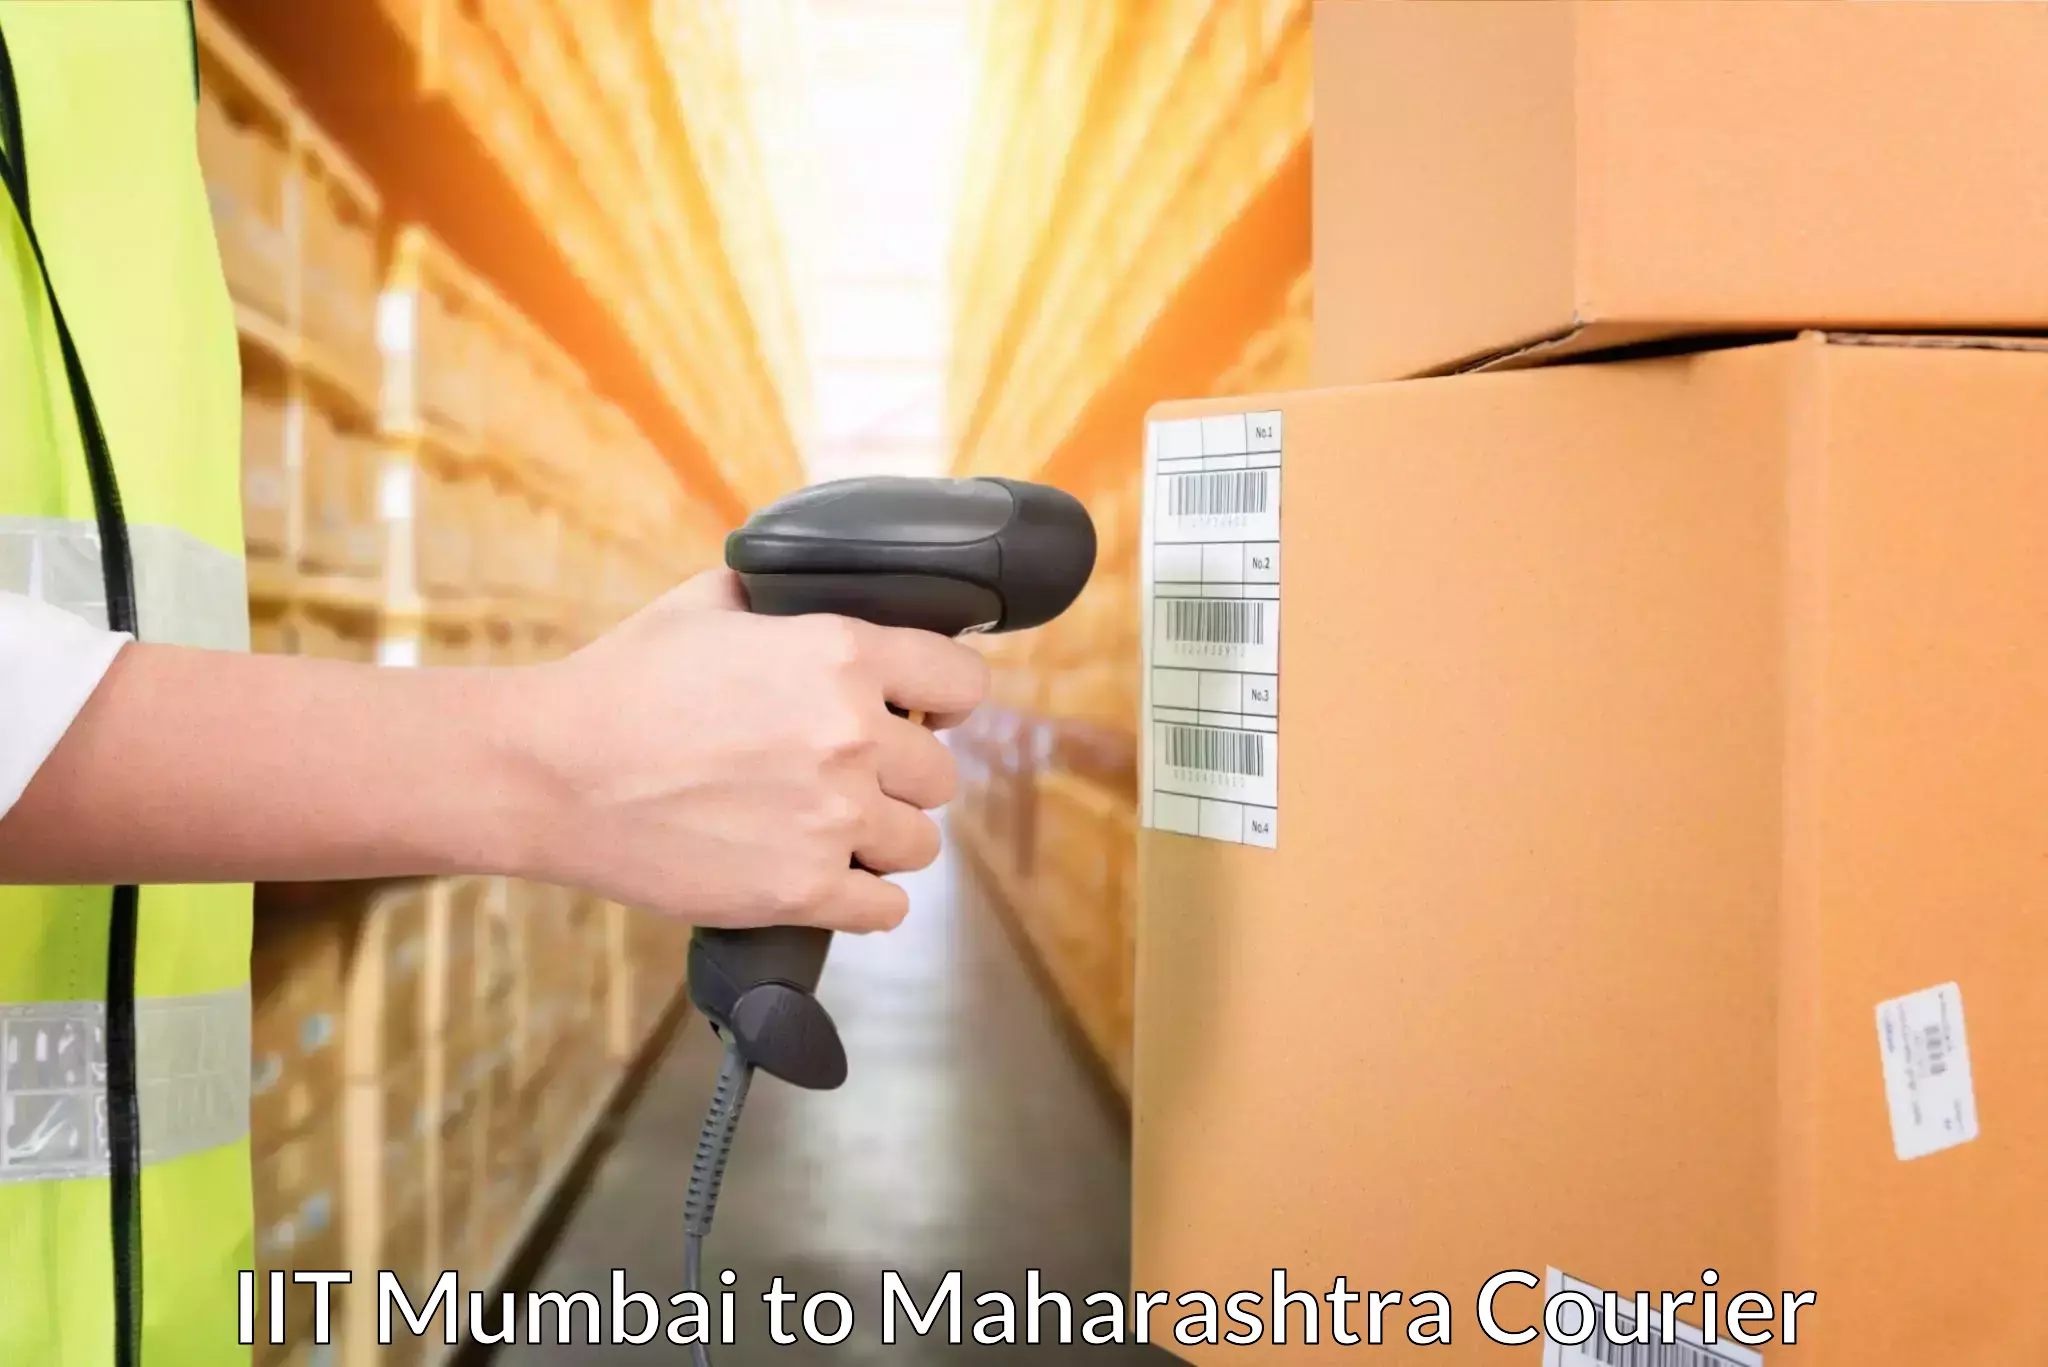 Urgent courier needs IIT Mumbai to Gondia